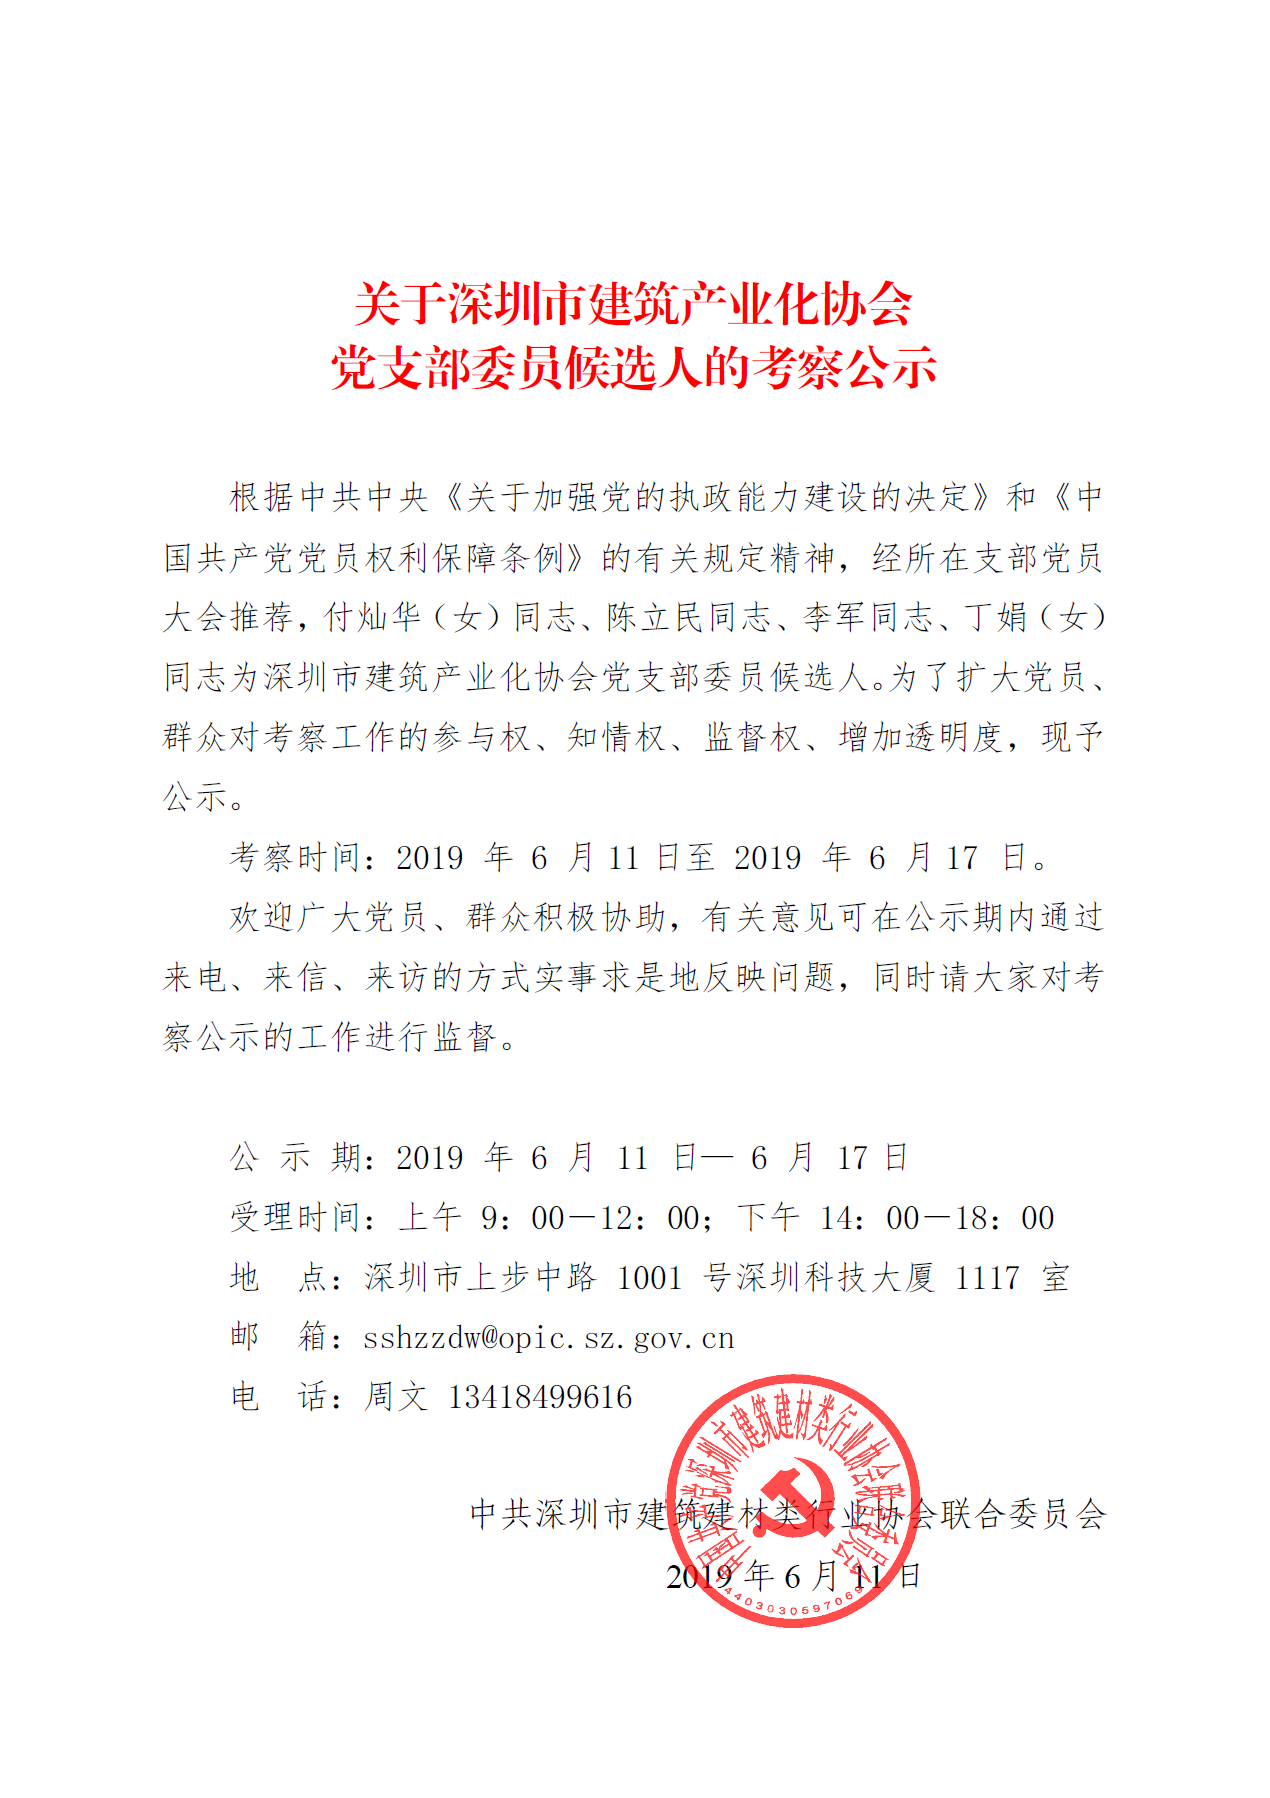 关于深圳市建筑产业化协会党支部委员候选人的考察公示